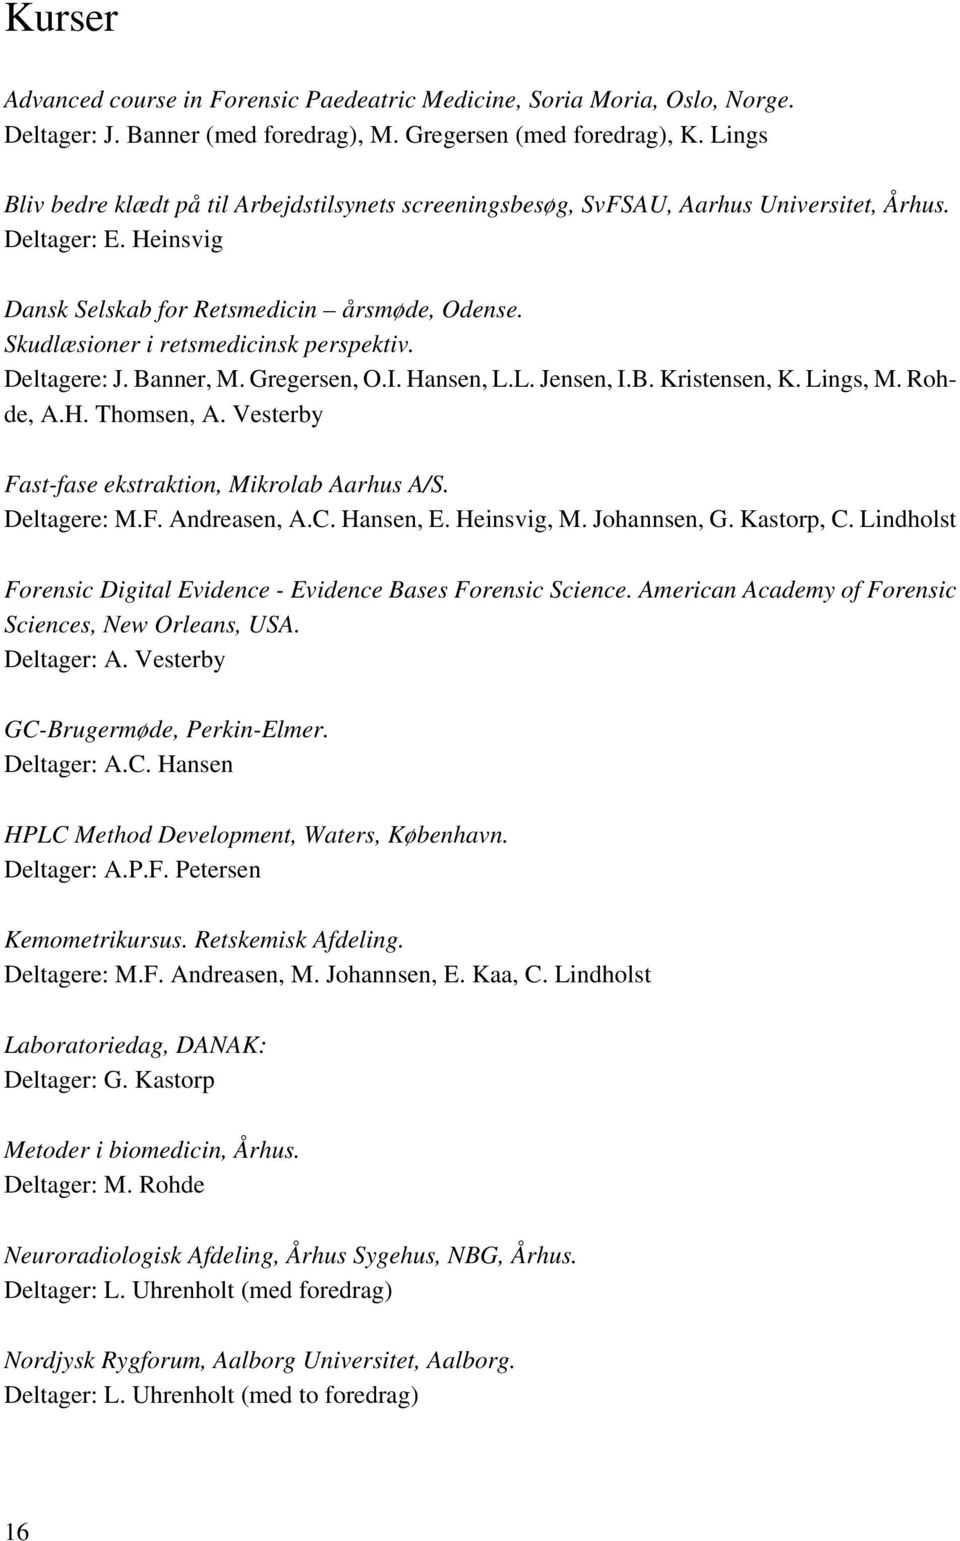 Skudlæsioner i retsmedicinsk perspektiv. Deltagere: J. Banner, M. Gregersen, O.I. Hansen, L.L. Jensen, I.B. Kristensen, K. Lings, M. Rohde, A.H. Thomsen, A.